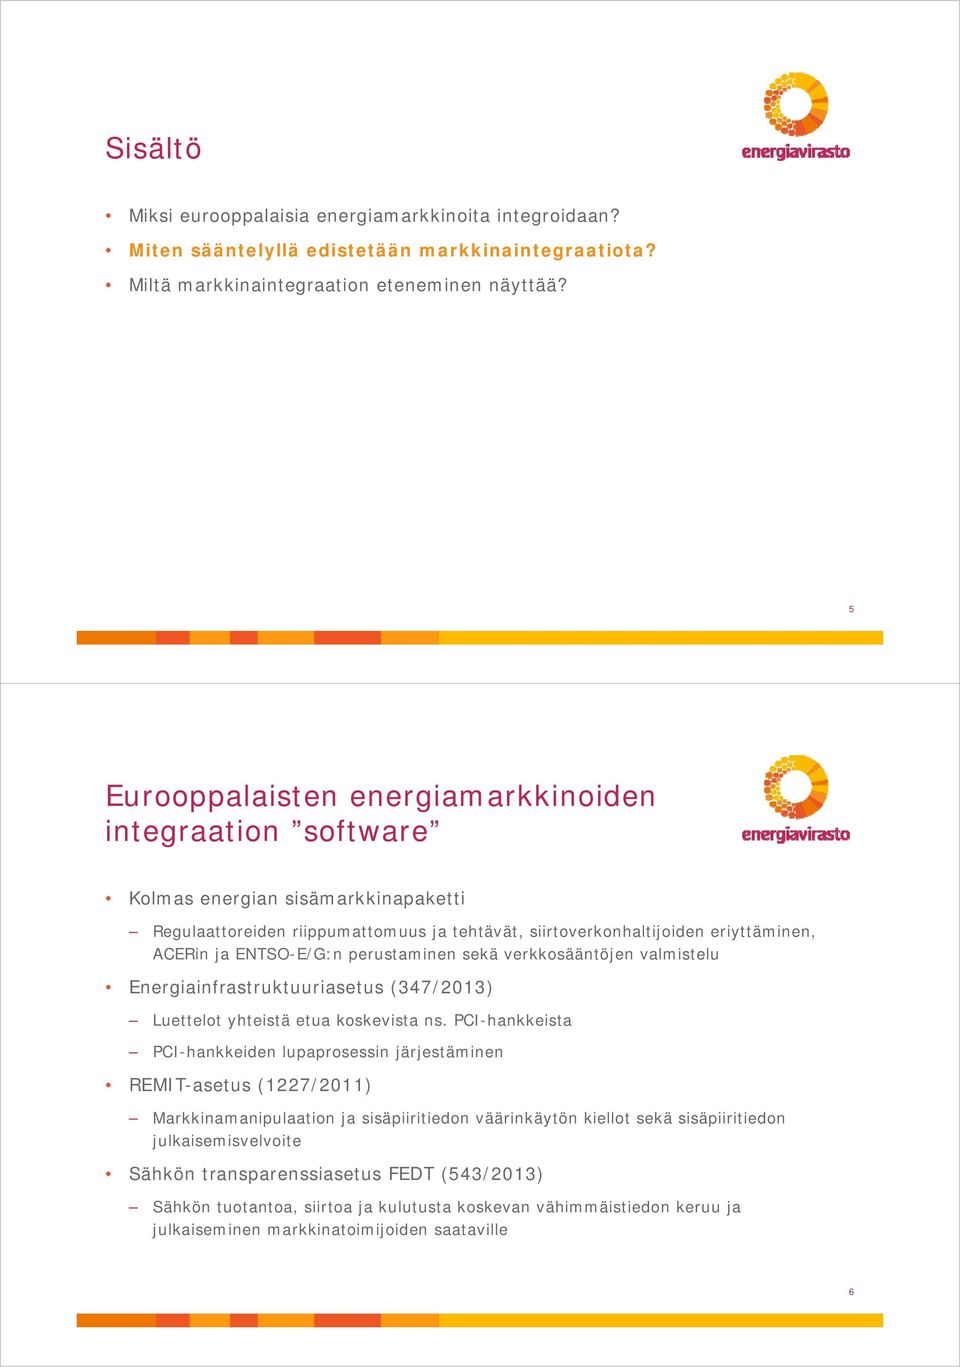 ENTSO-E/G:n perustaminen sekä verkkosääntöjen valmistelu Energiainfrastruktuuriasetus (347/2013) Luettelot yhteistä etua koskevista ns.